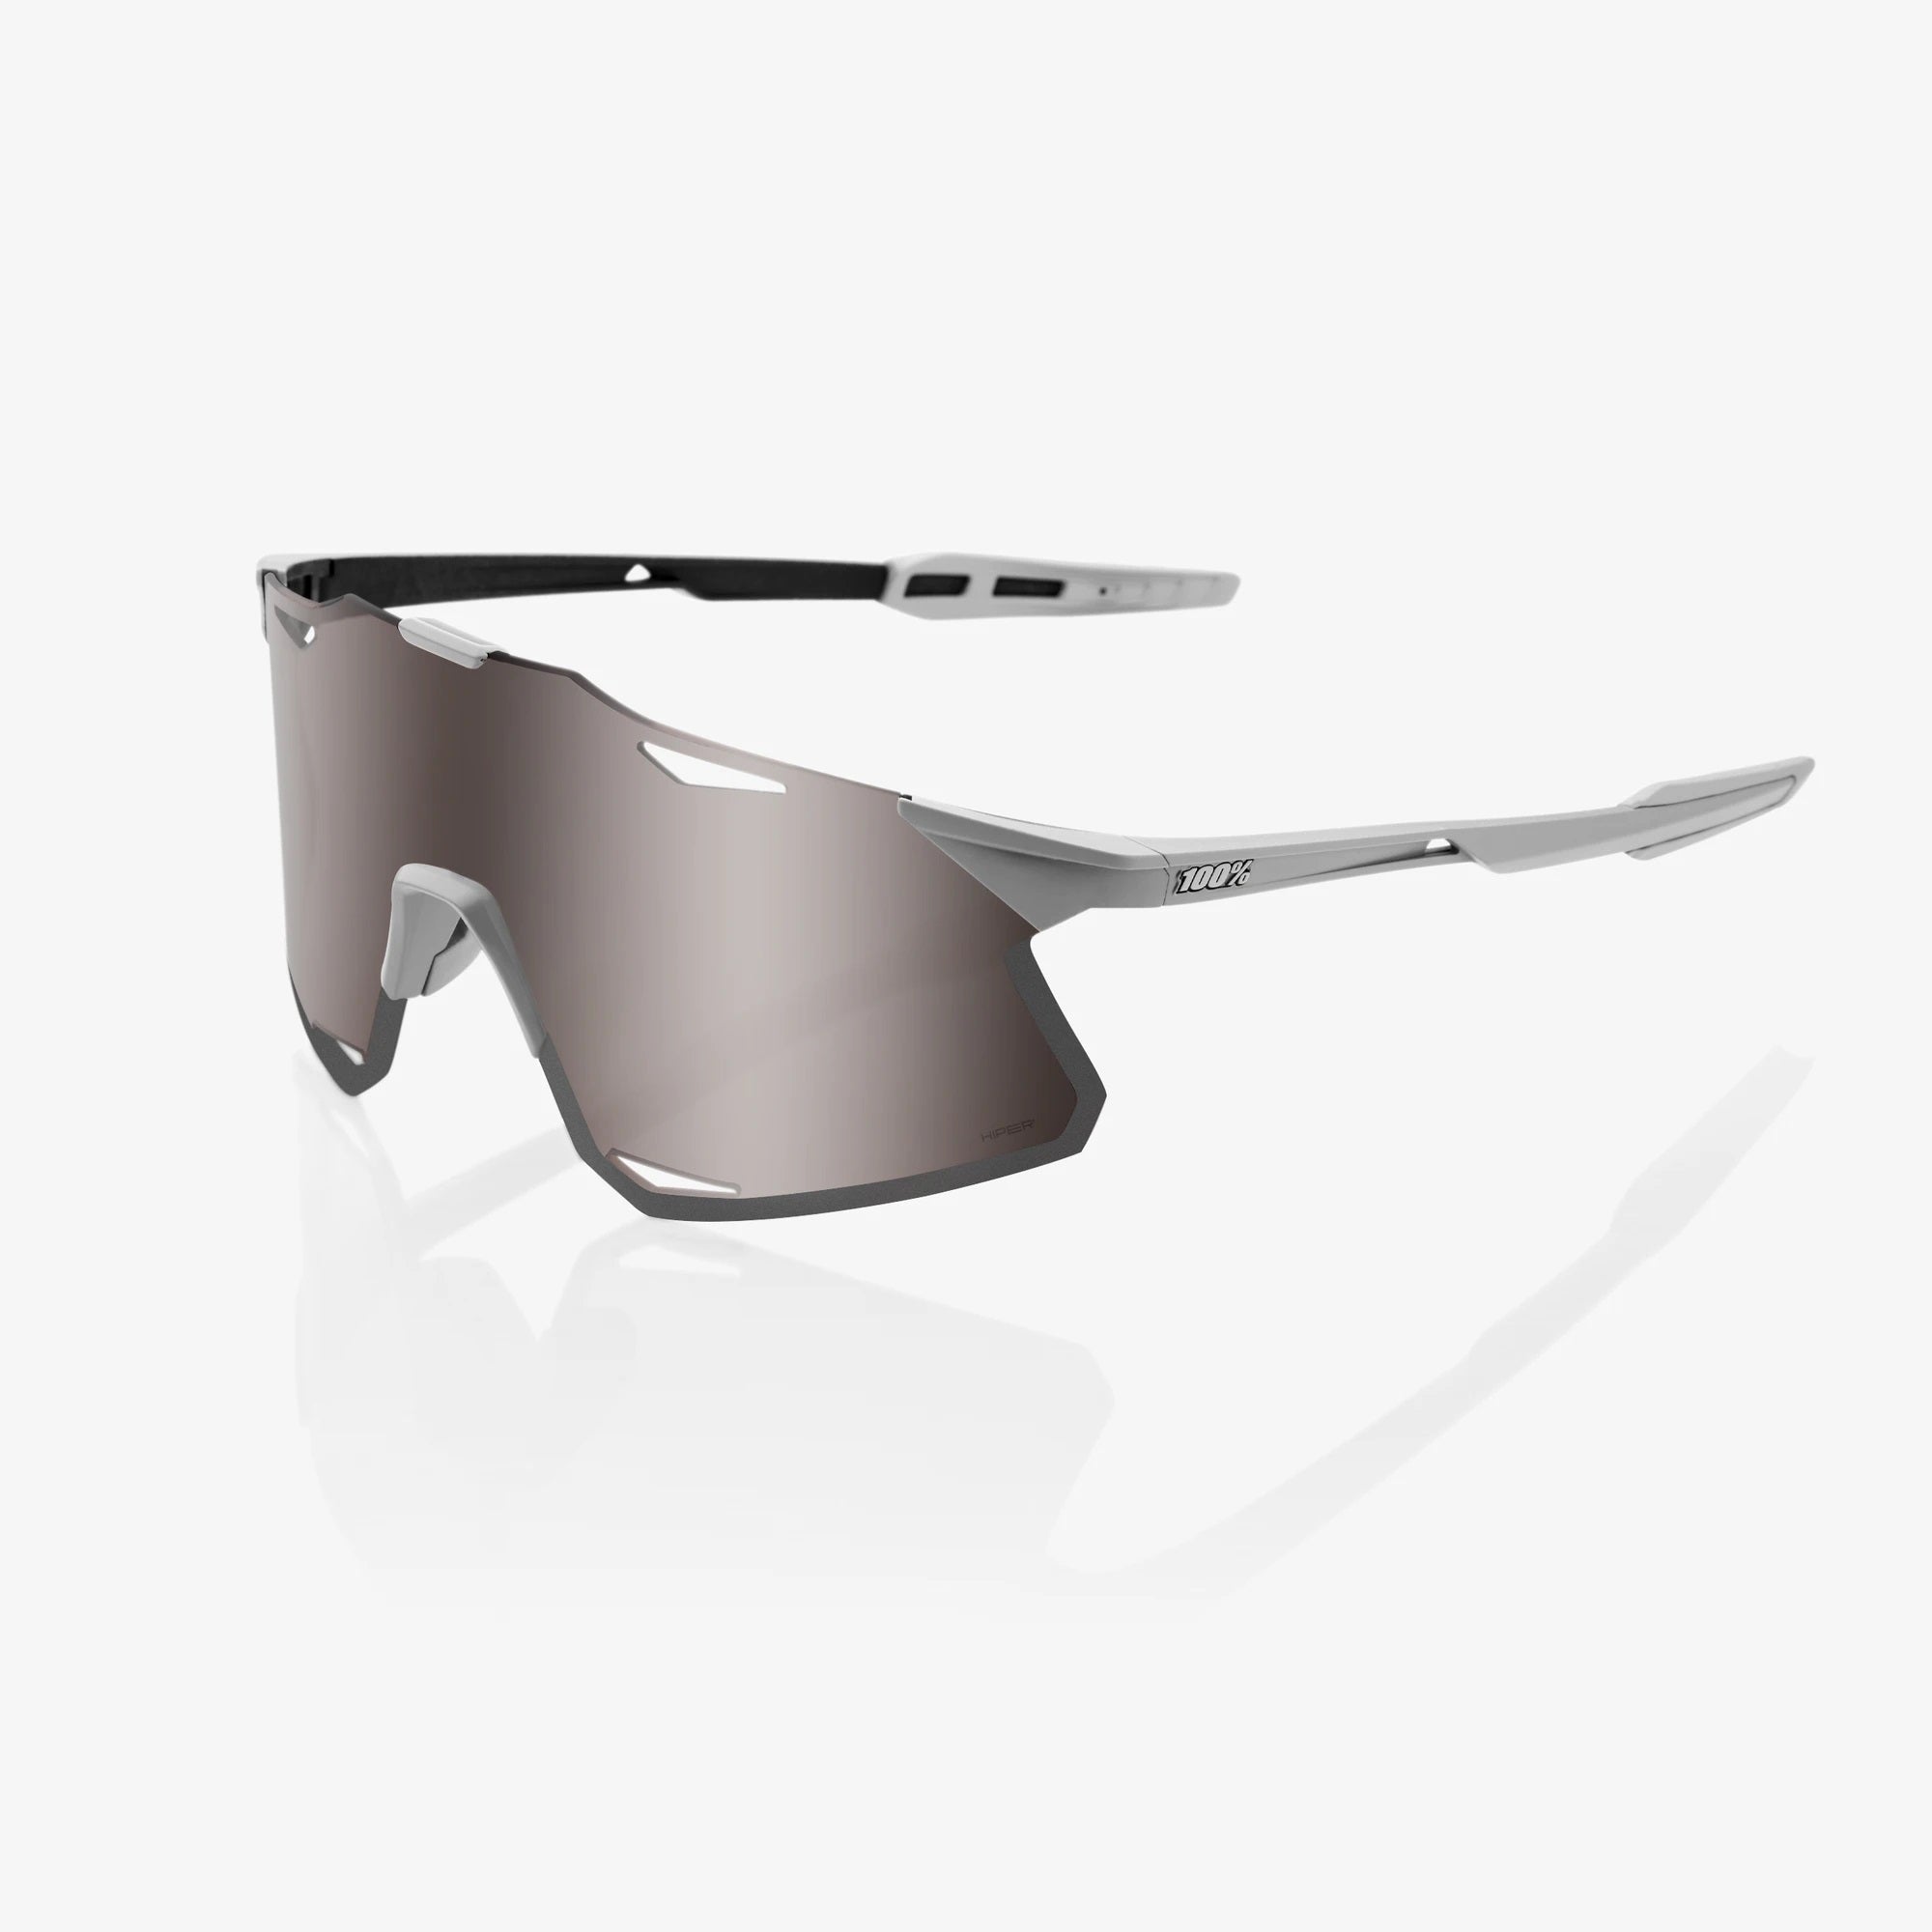 100% Hypercraft Sunglasses - Matte Stone Grey (HiPer Silver Mirror Len ...